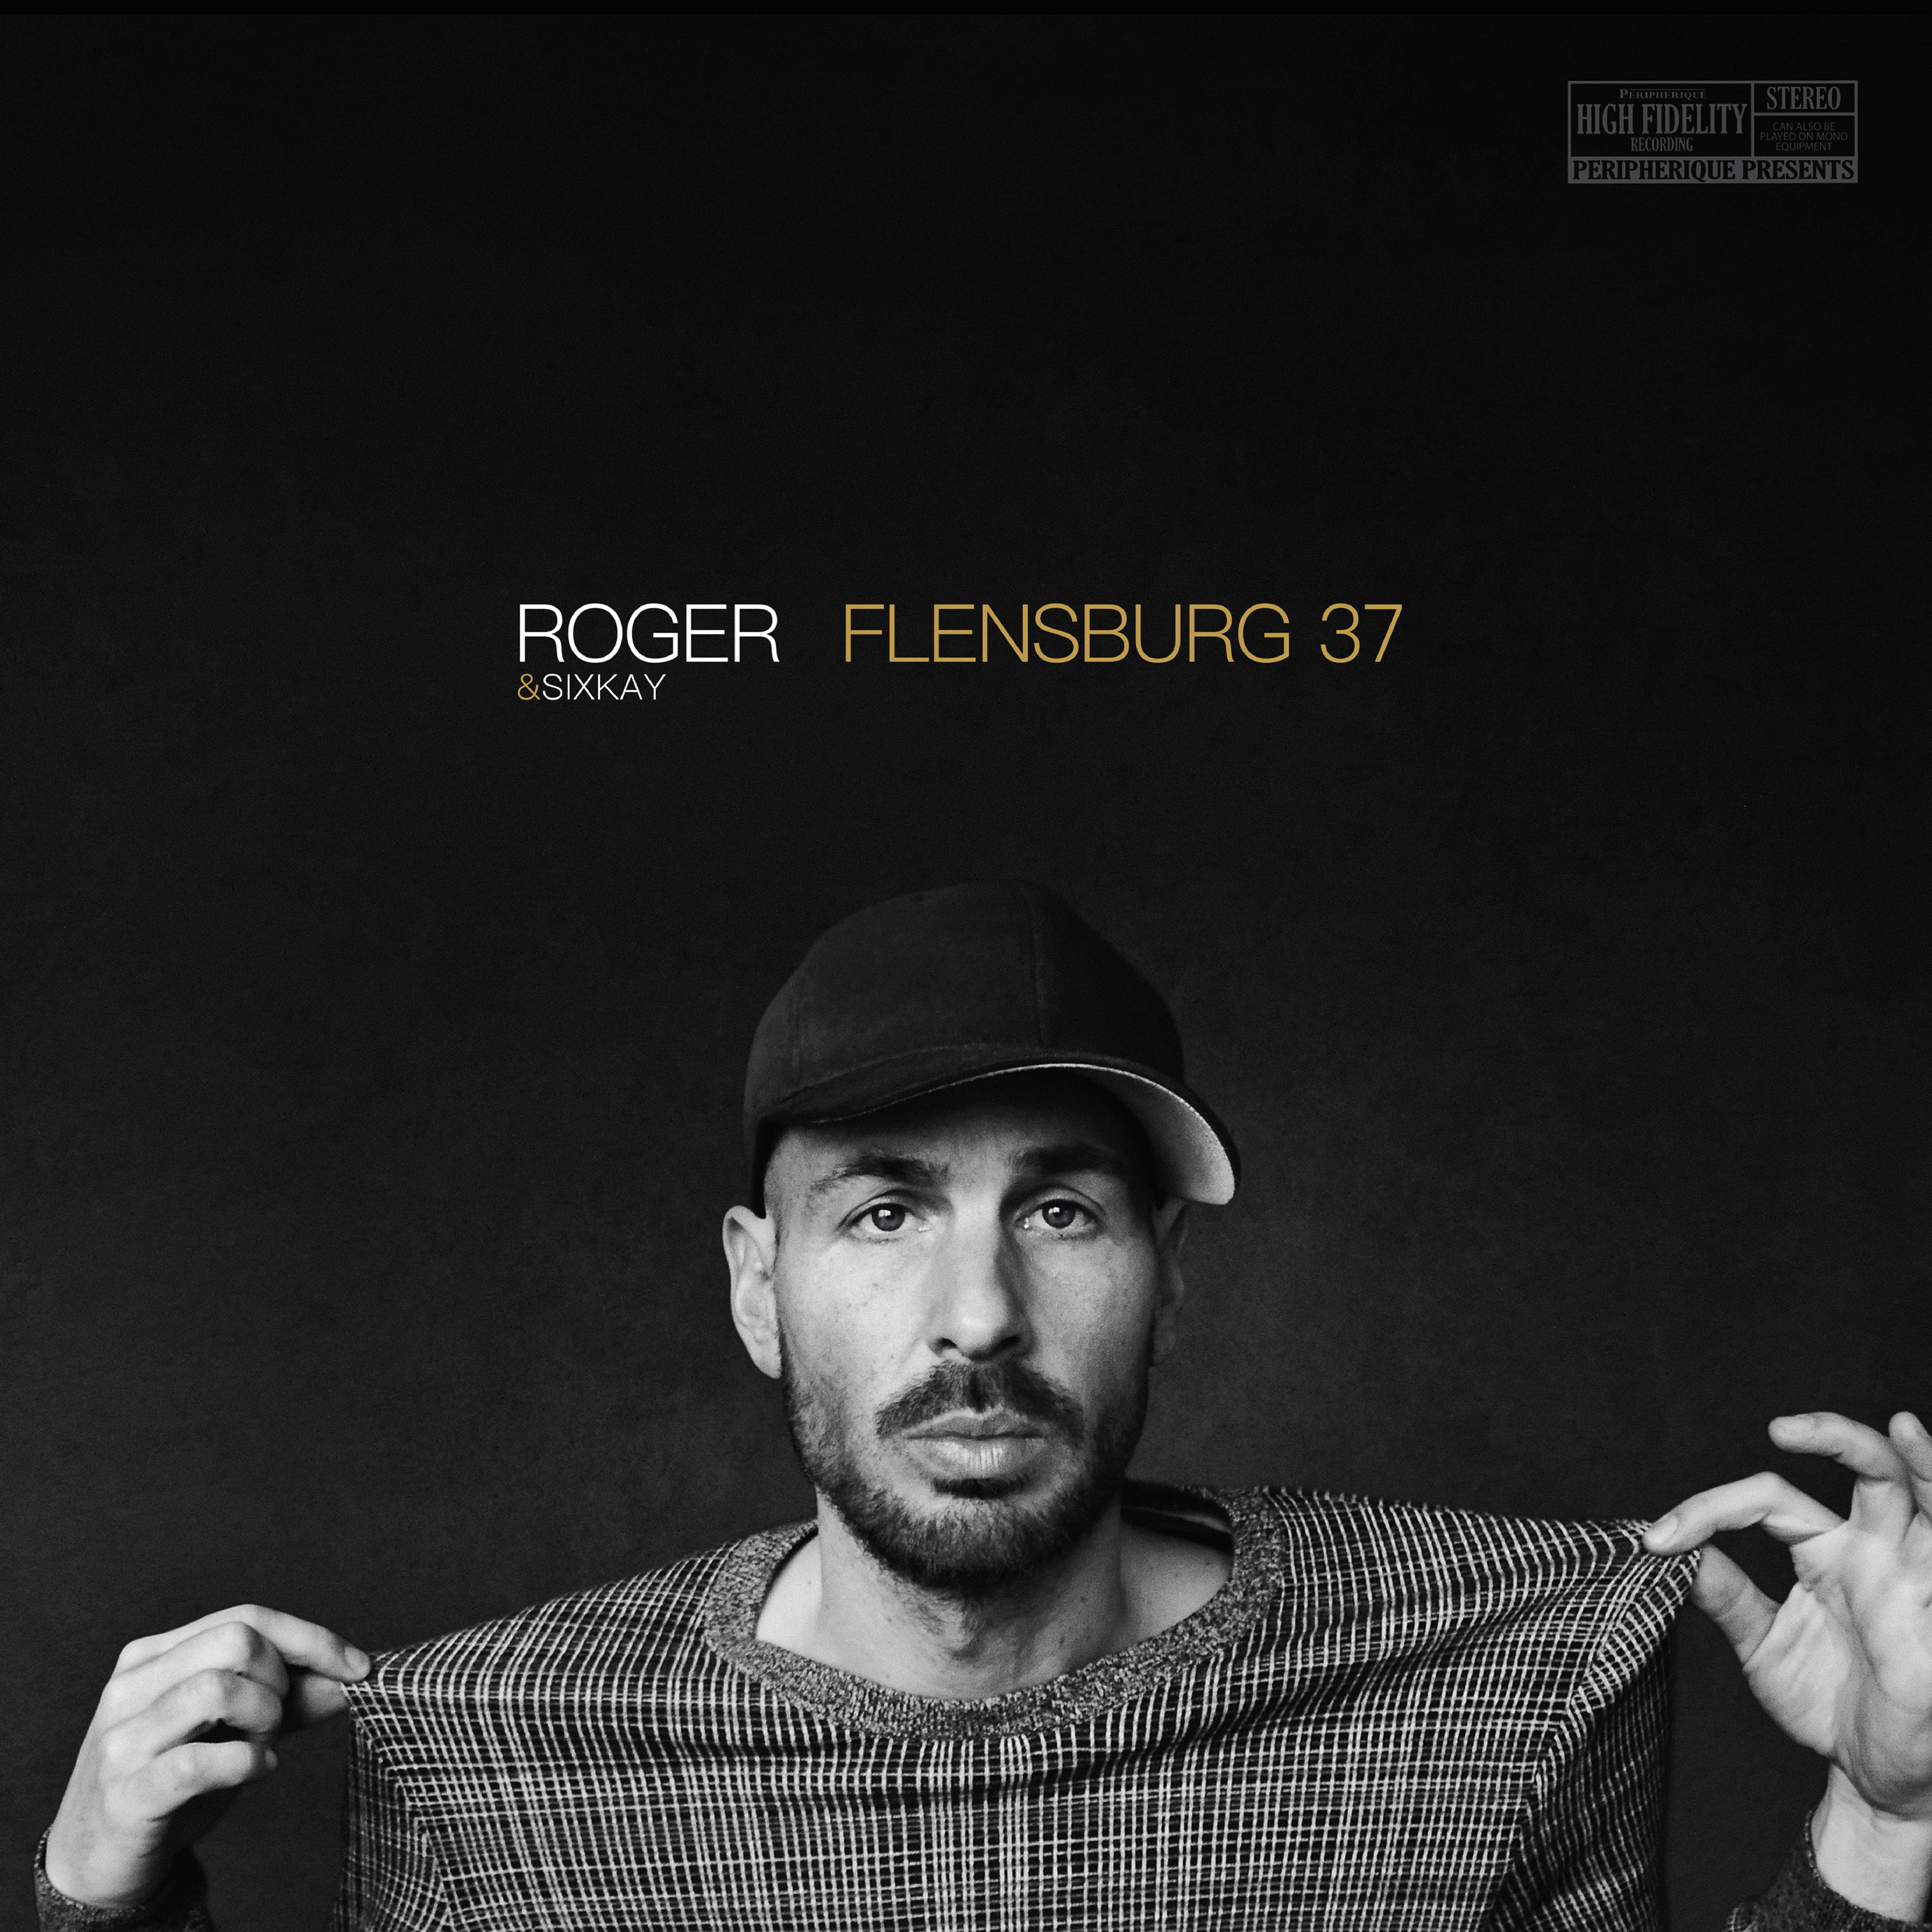 NEUES ALBUM: „Flensburg 37“ erscheint am 26.04.19 über Peripherique!